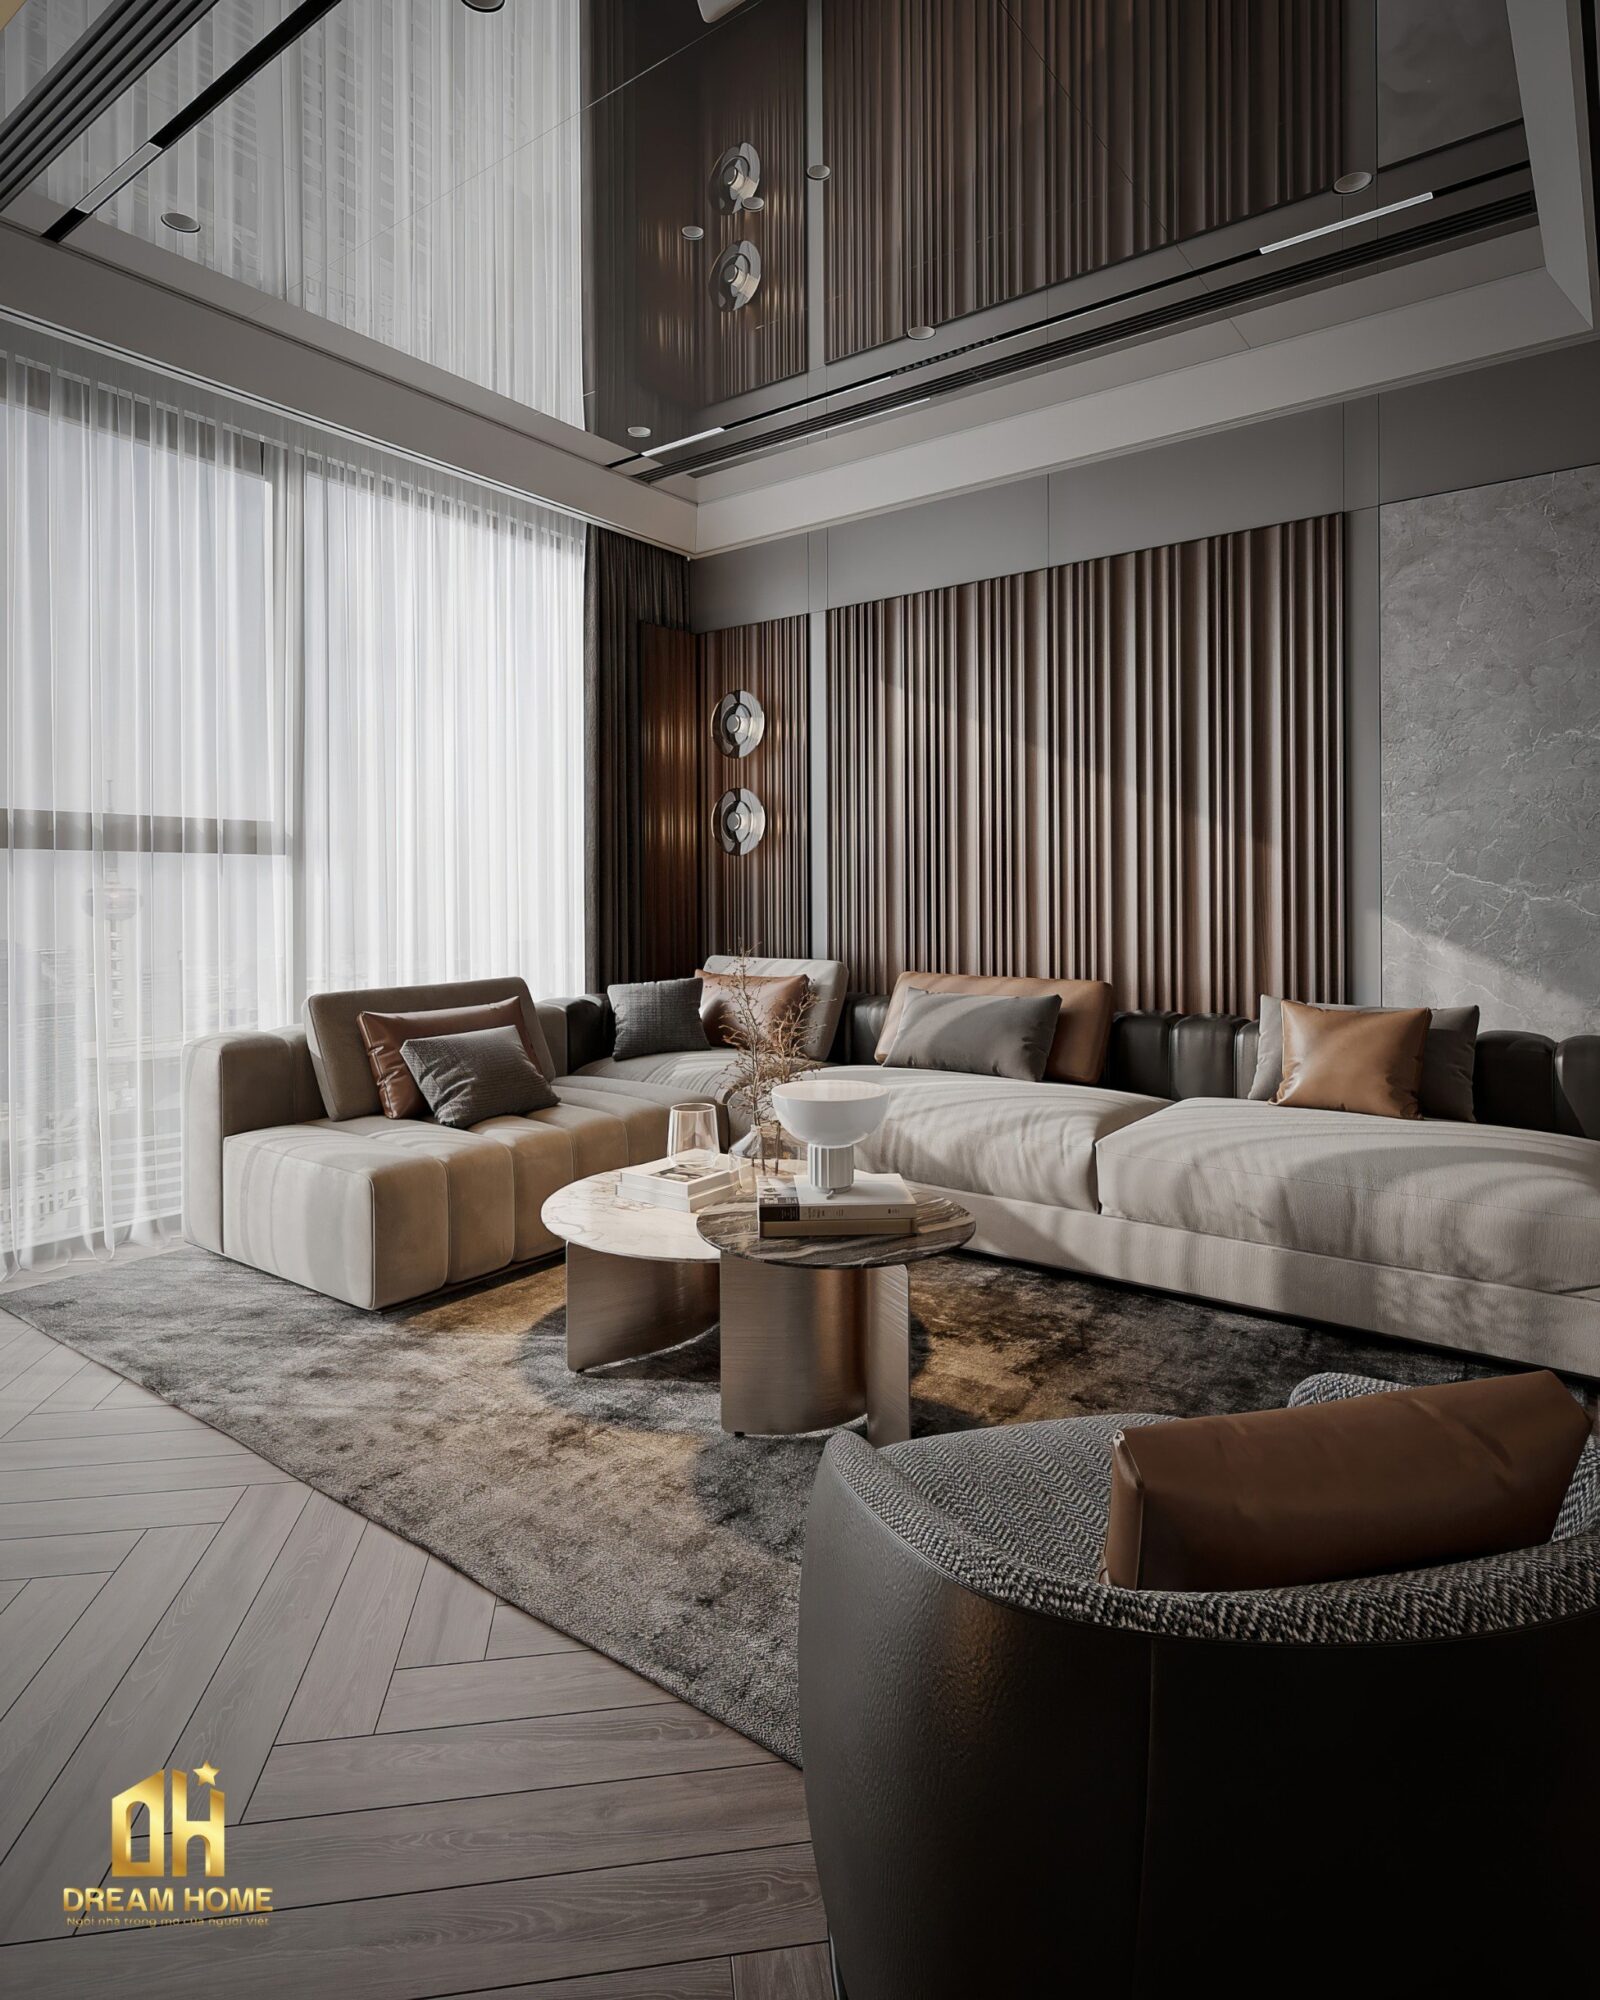 Ghế sofa là trung tâm của phòng khách, với sự kết hợp tinh tế giữa màu be và màu nâu trên ghế sofa đem đến sự thoải mái 